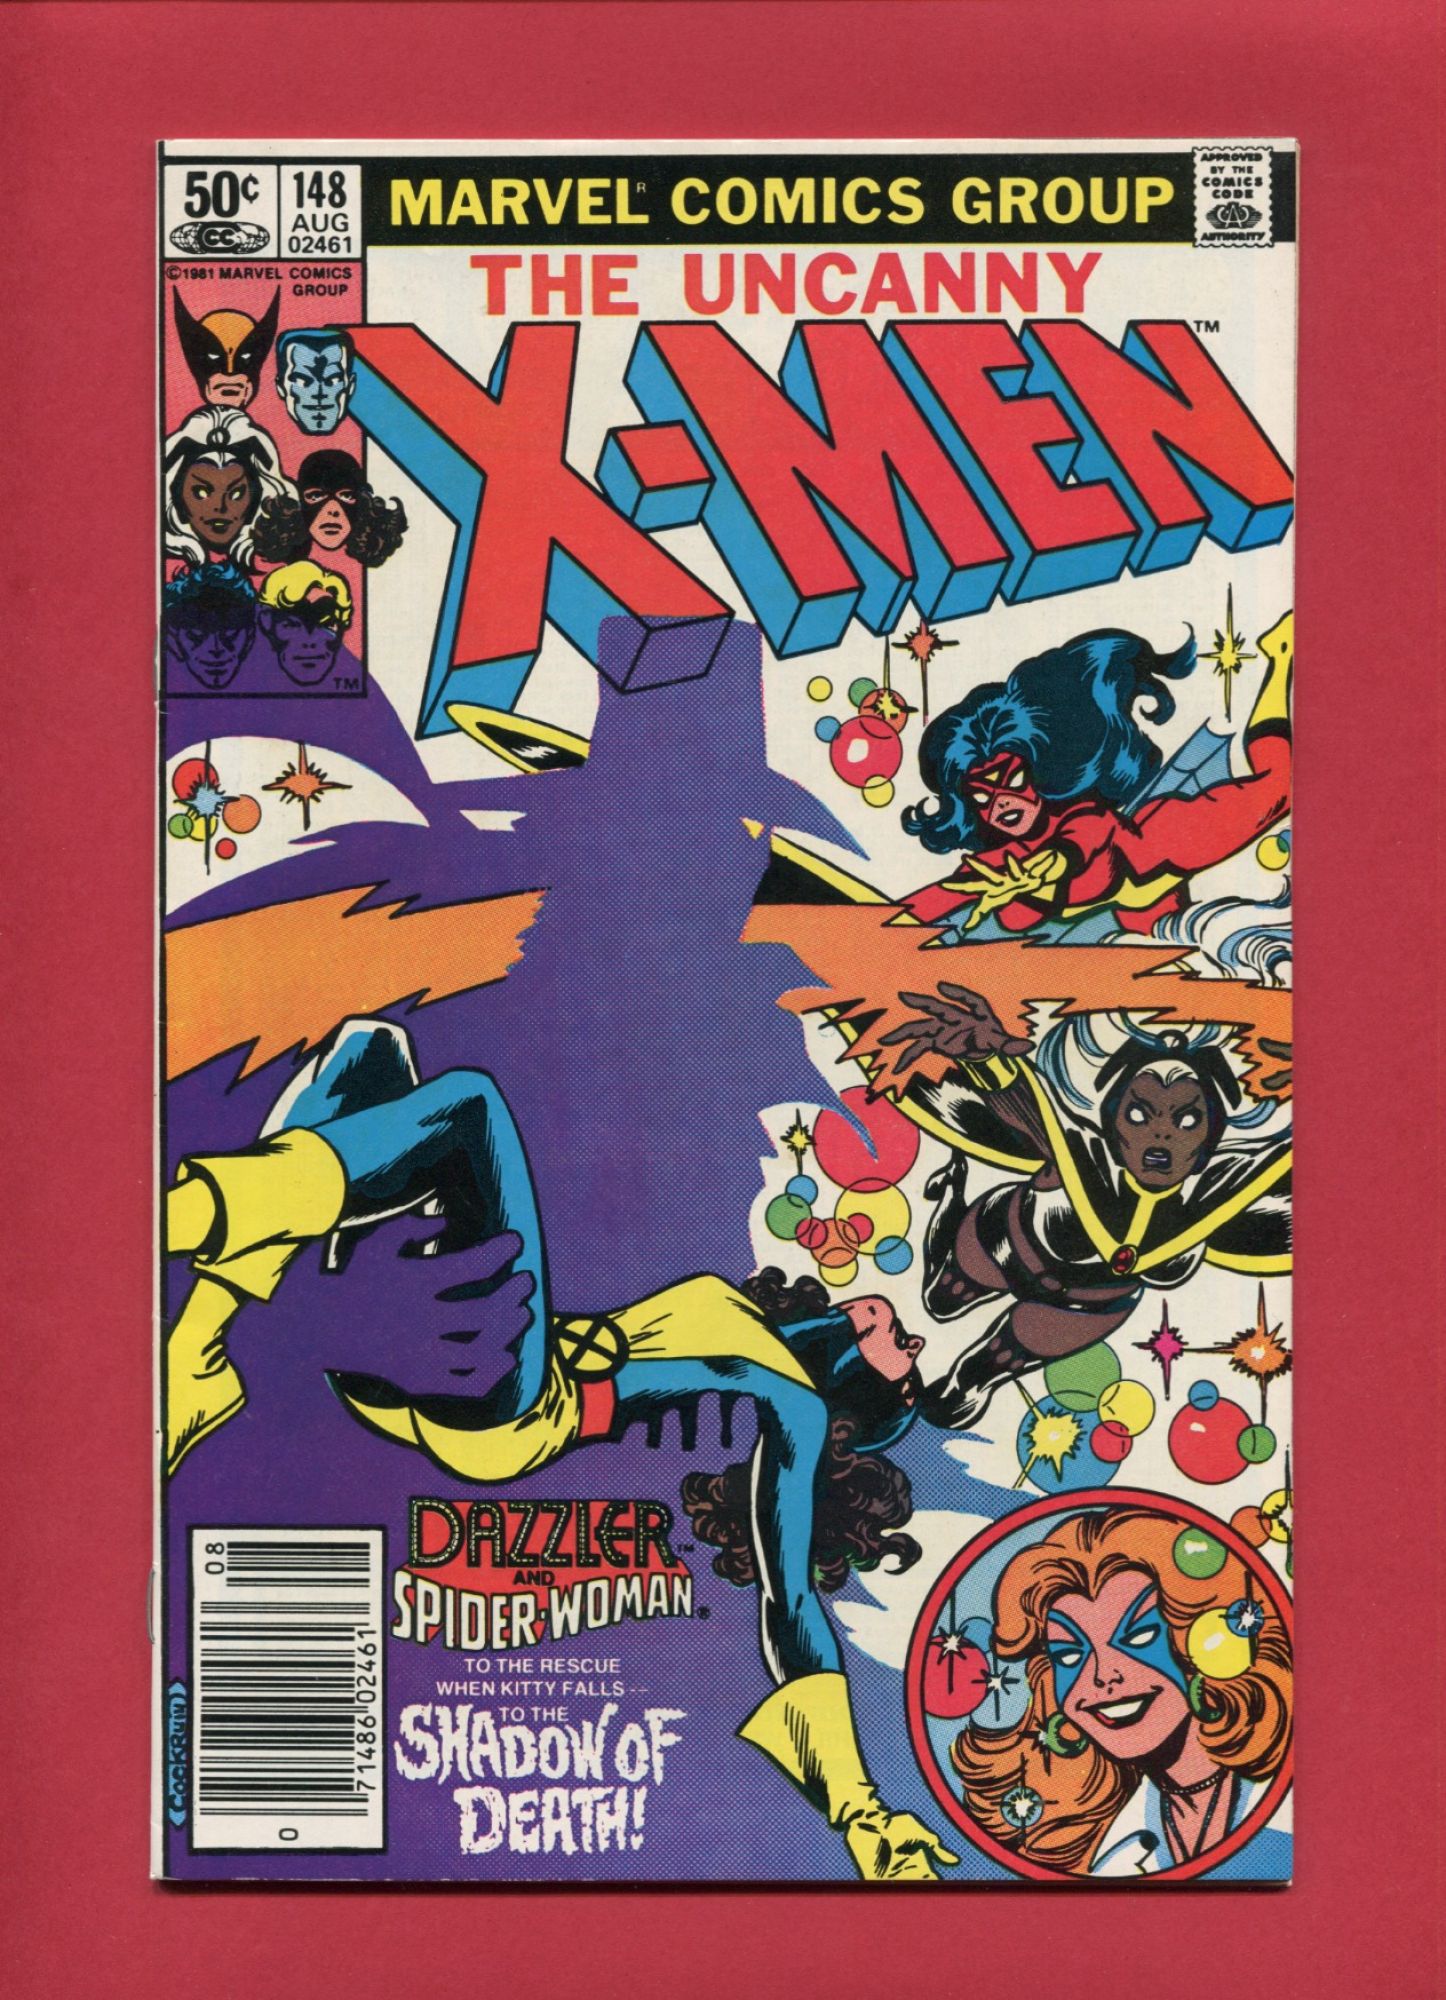 Uncanny X-Men (Volume 1 1963) #148, Aug 1981, Marvel :: Iconic Comics ...